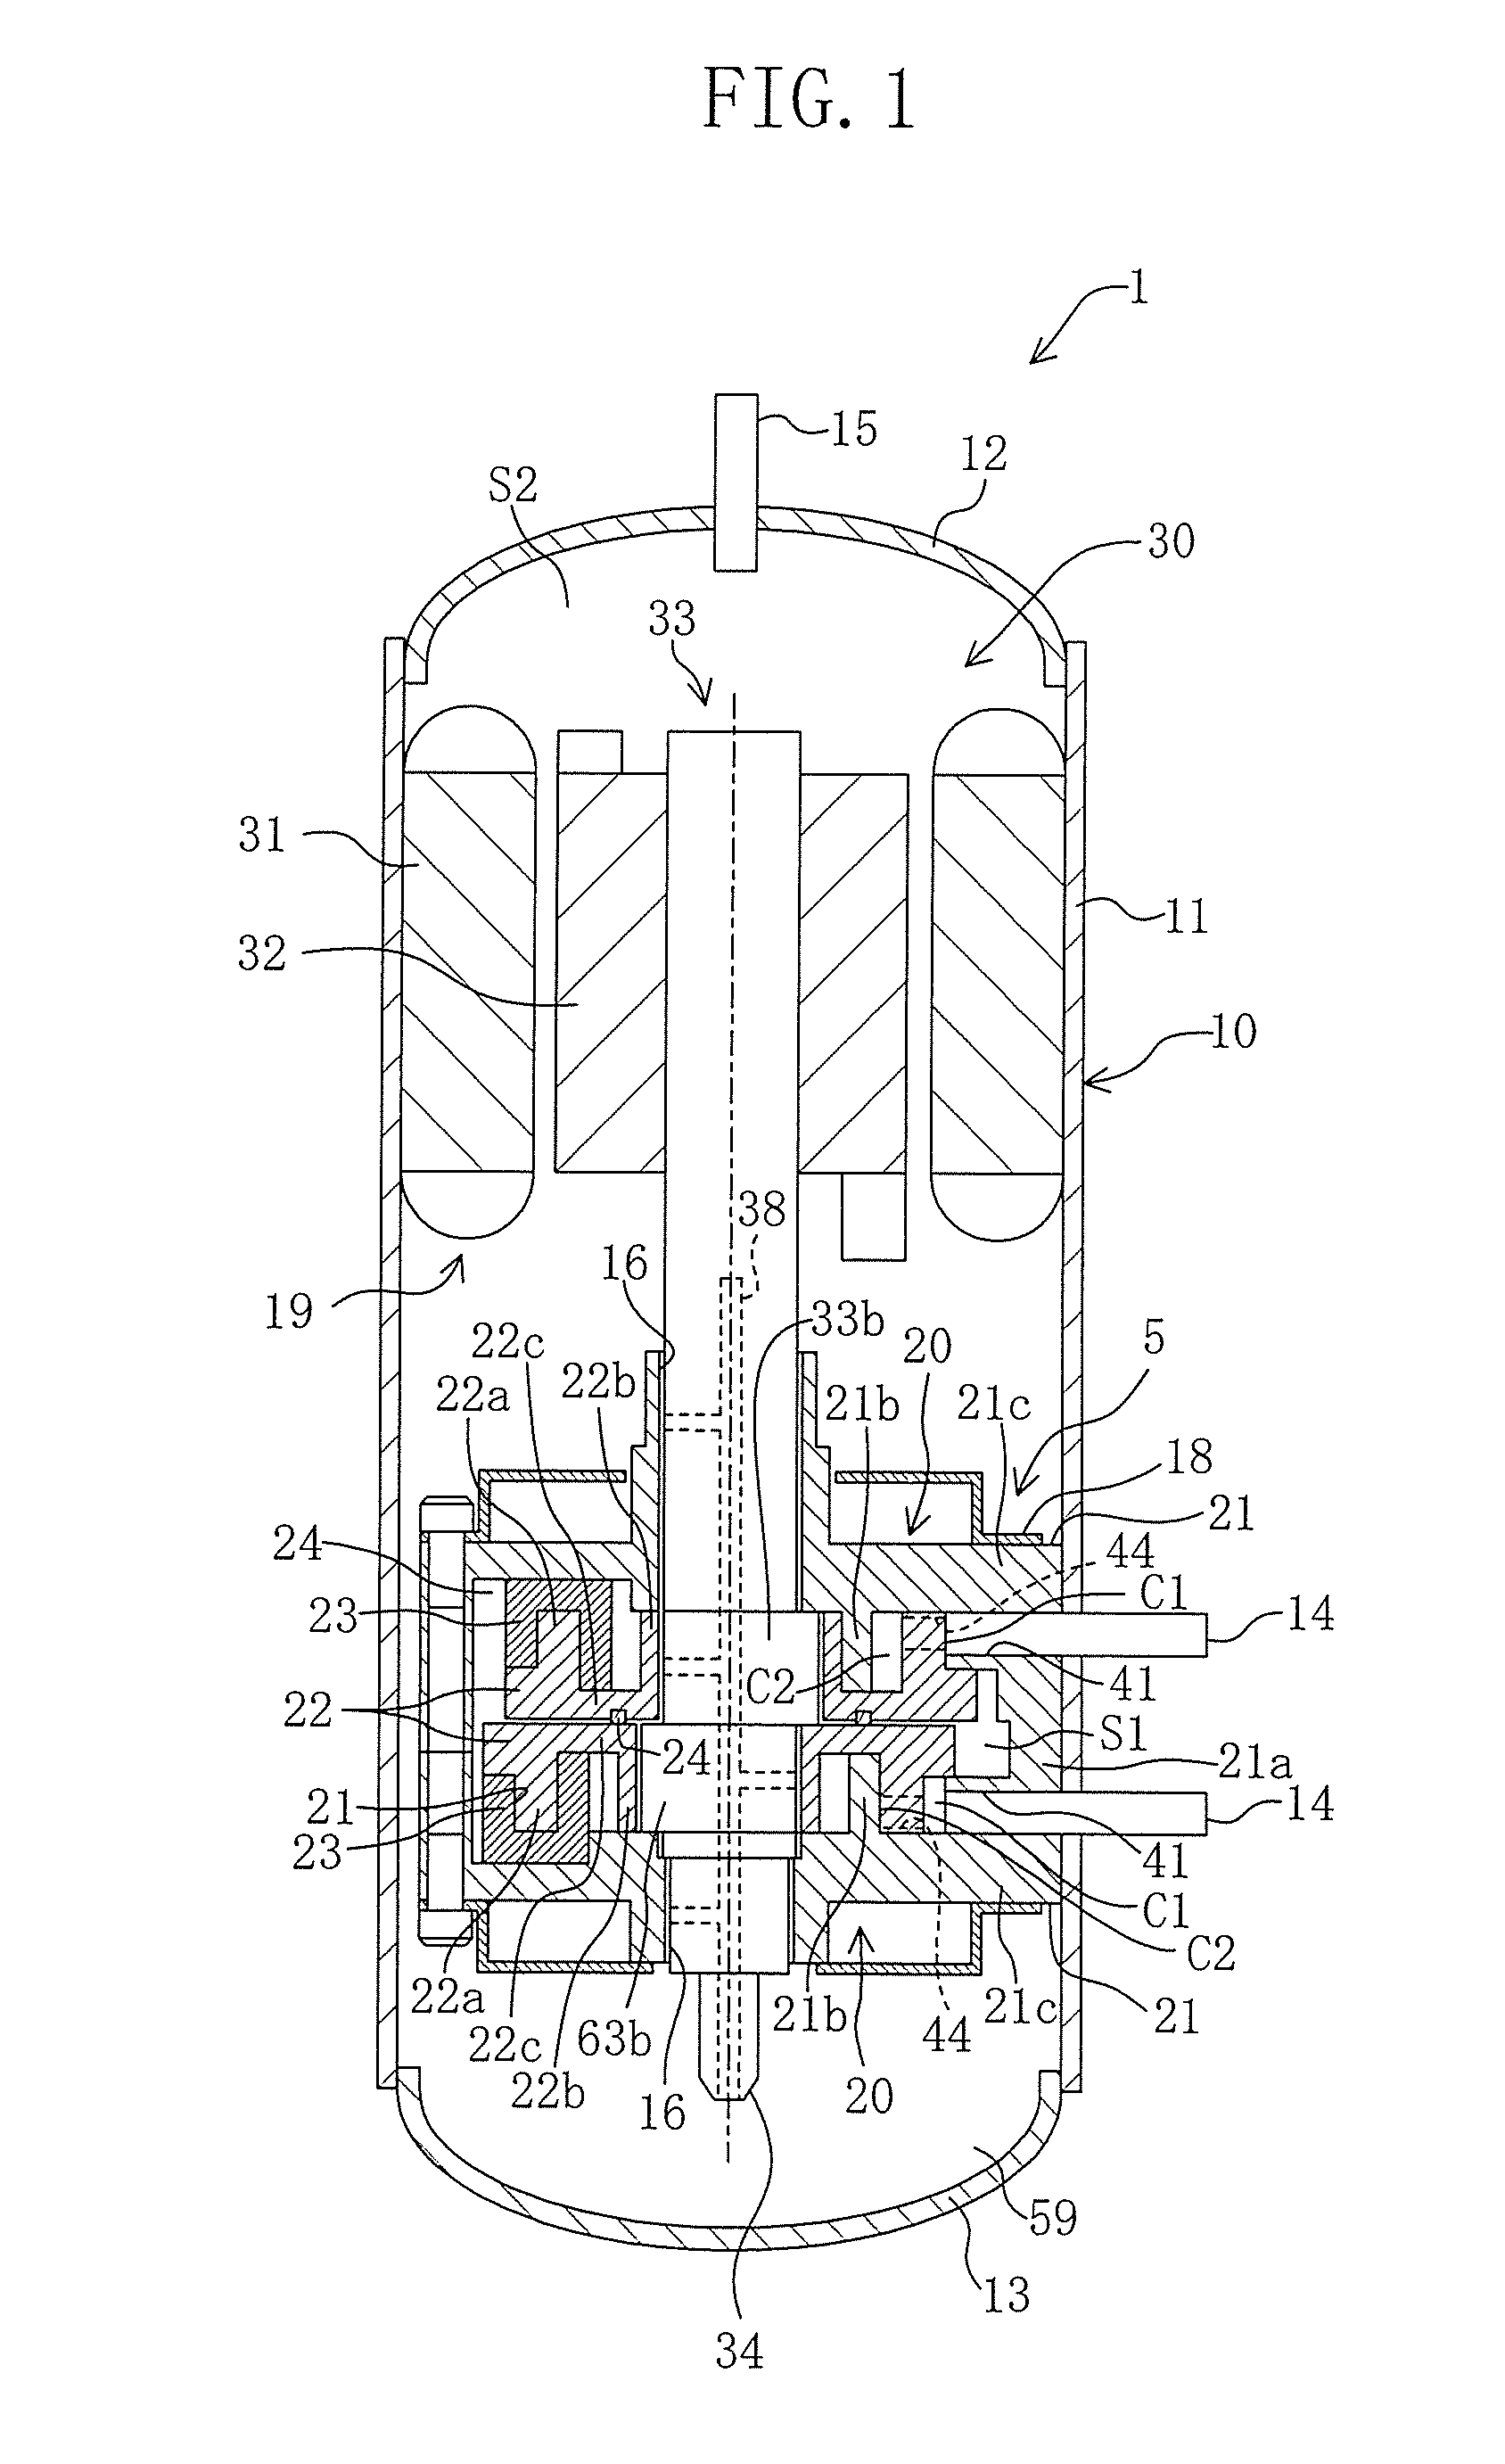 Rotary-type fluid machine